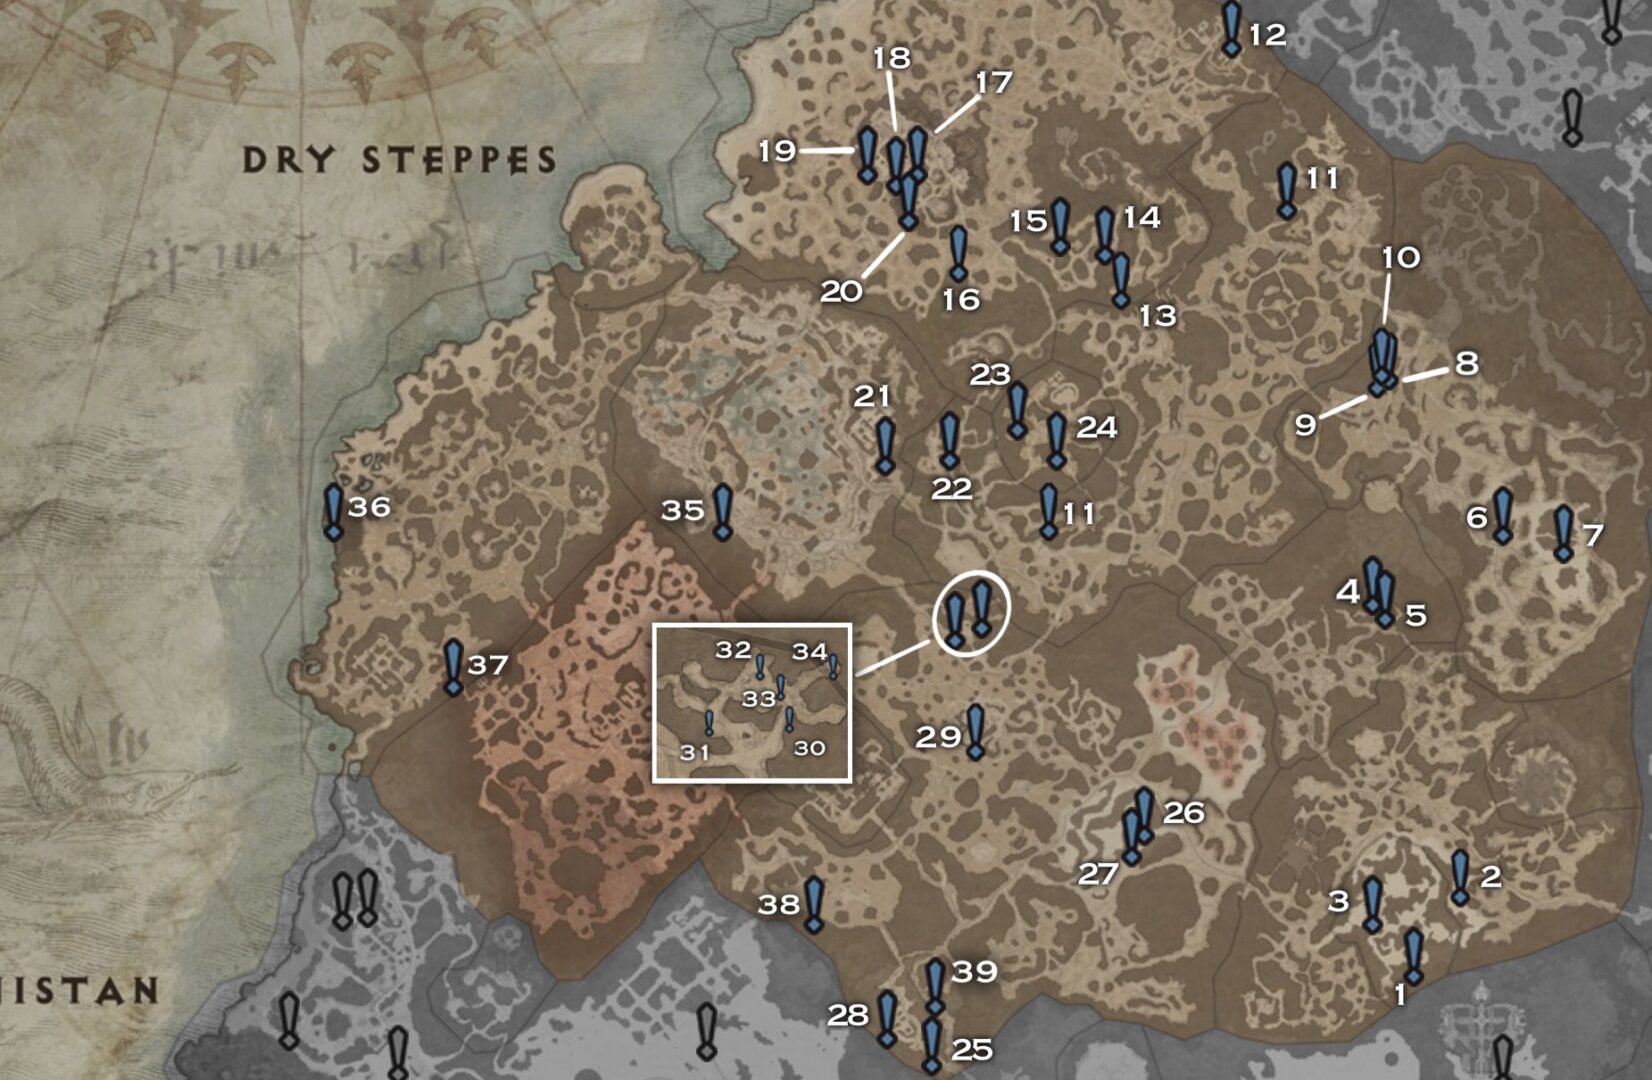 Diablo IV - Guide de zone "Steppes Arides" : 100% de renommée, Autels de Lilith, Quêtes, Donjons, World Boss...